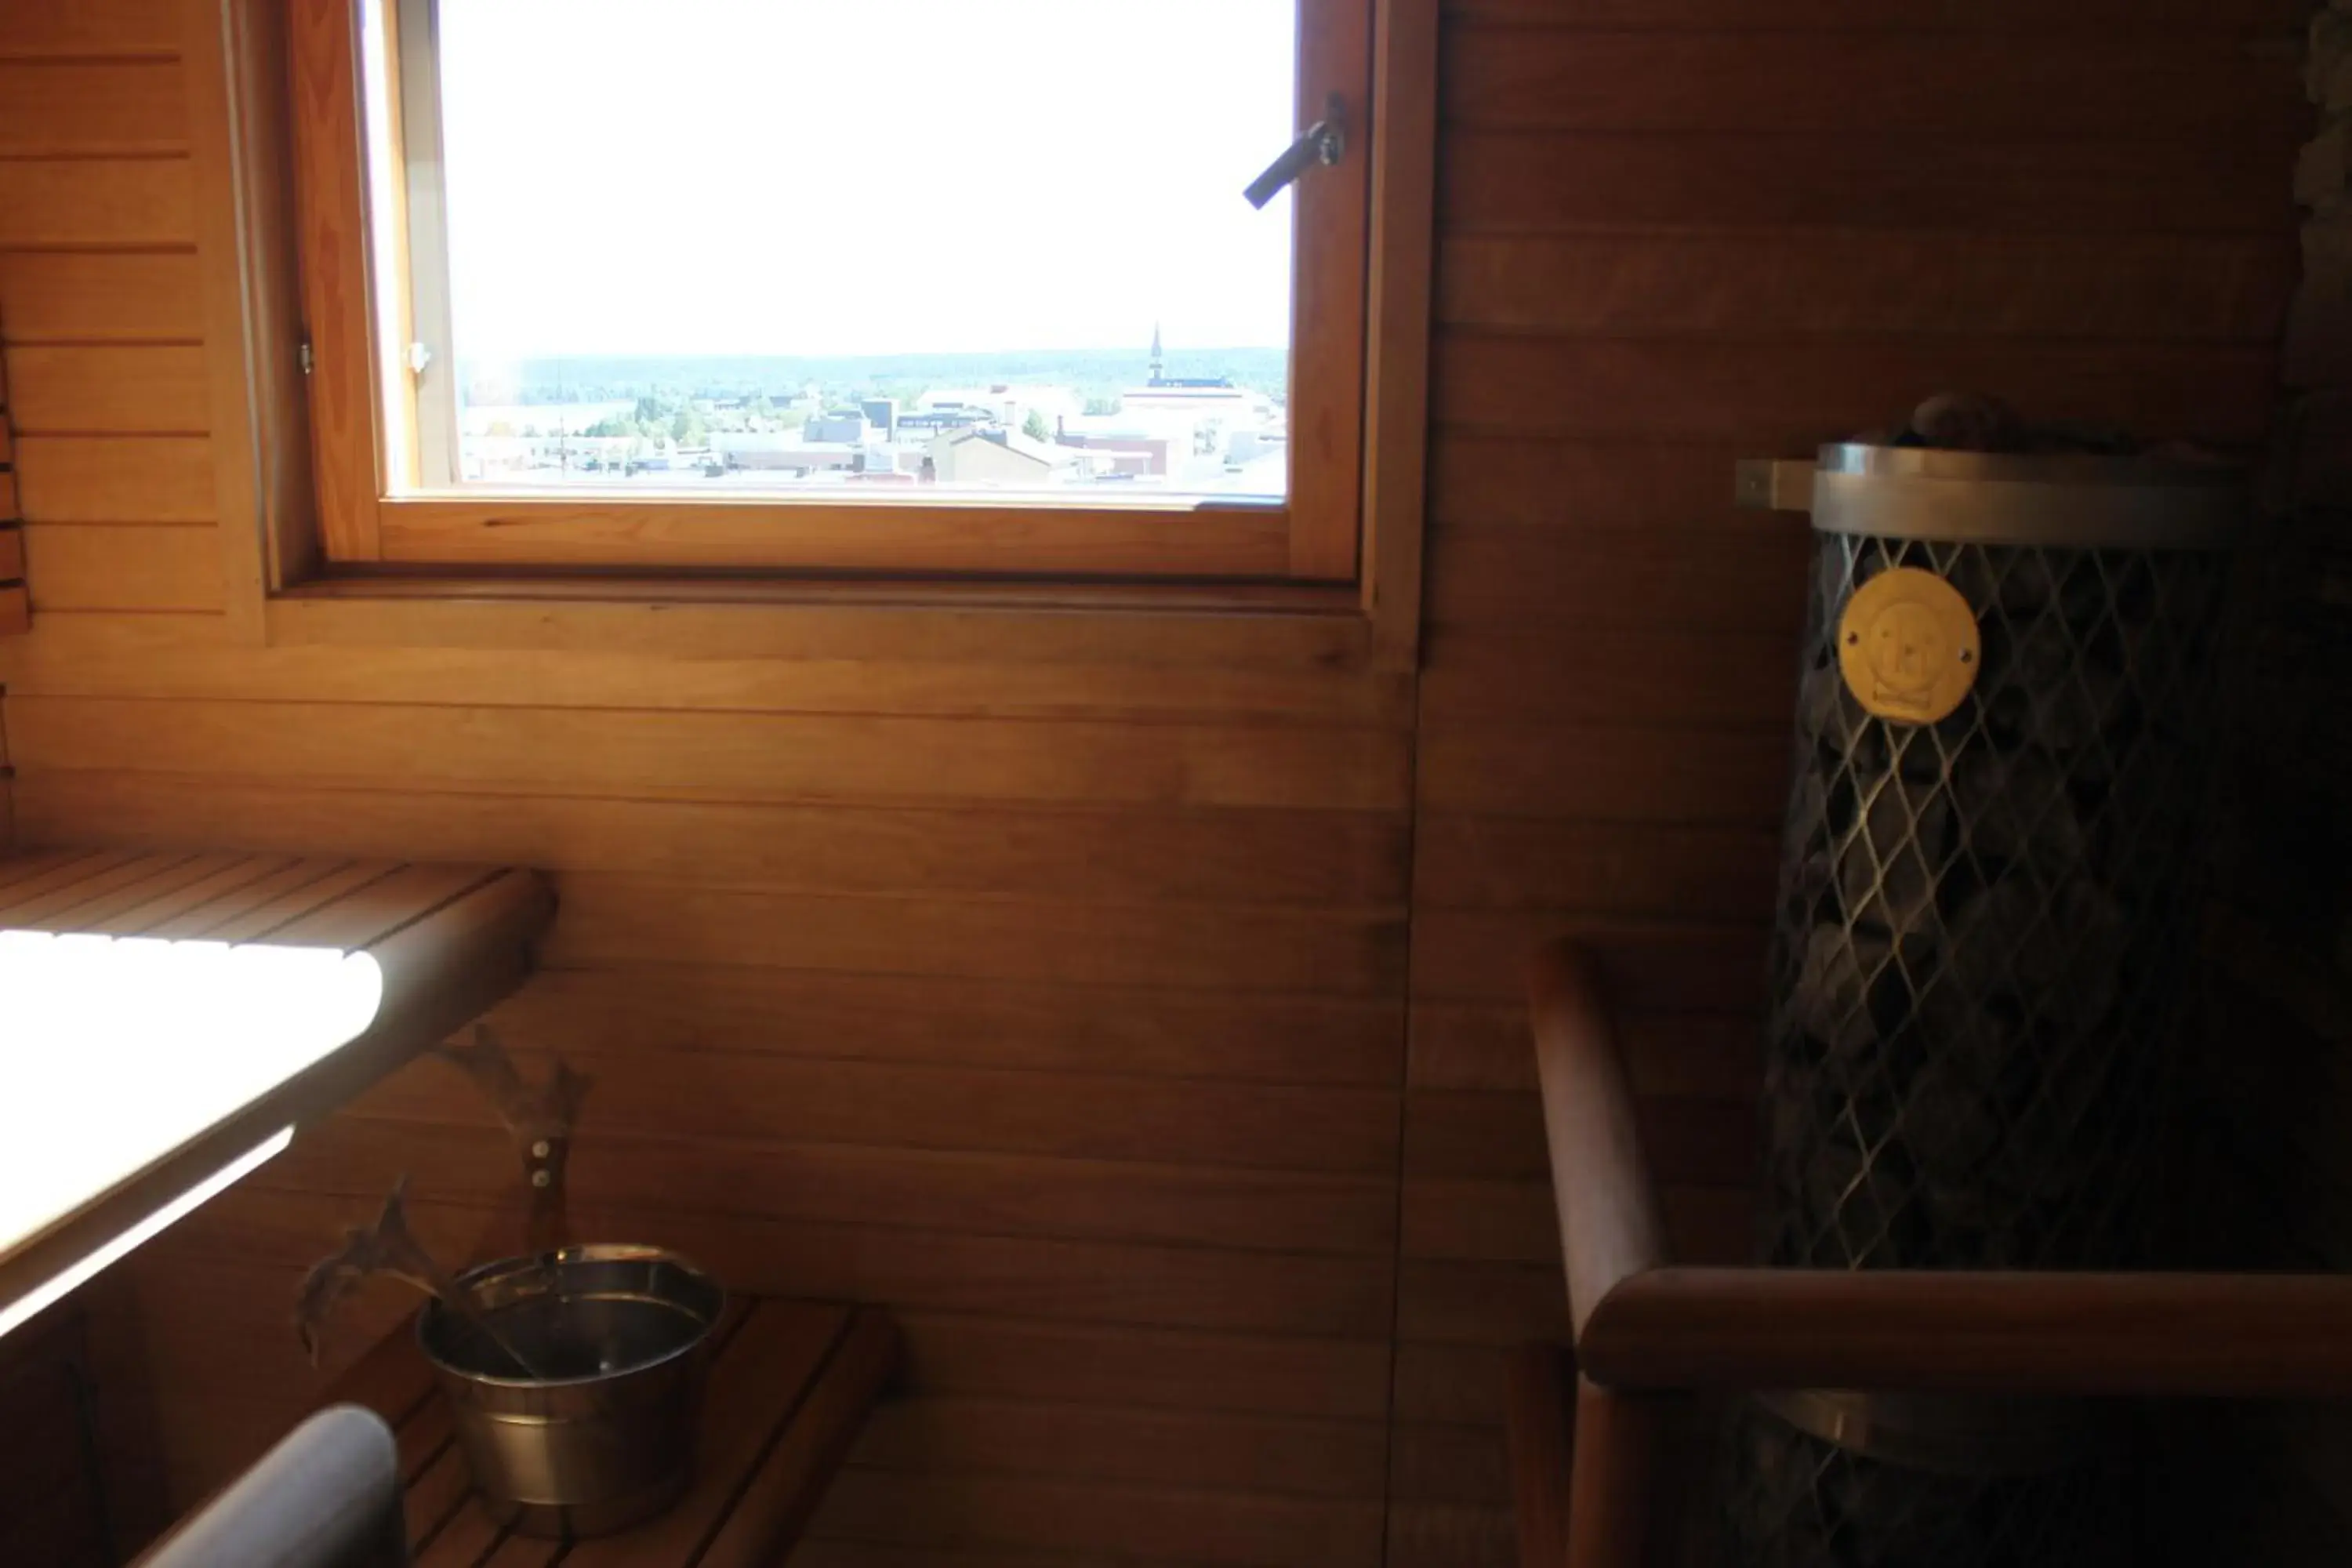 Sauna, Bathroom in Santa's Hotel Santa Claus